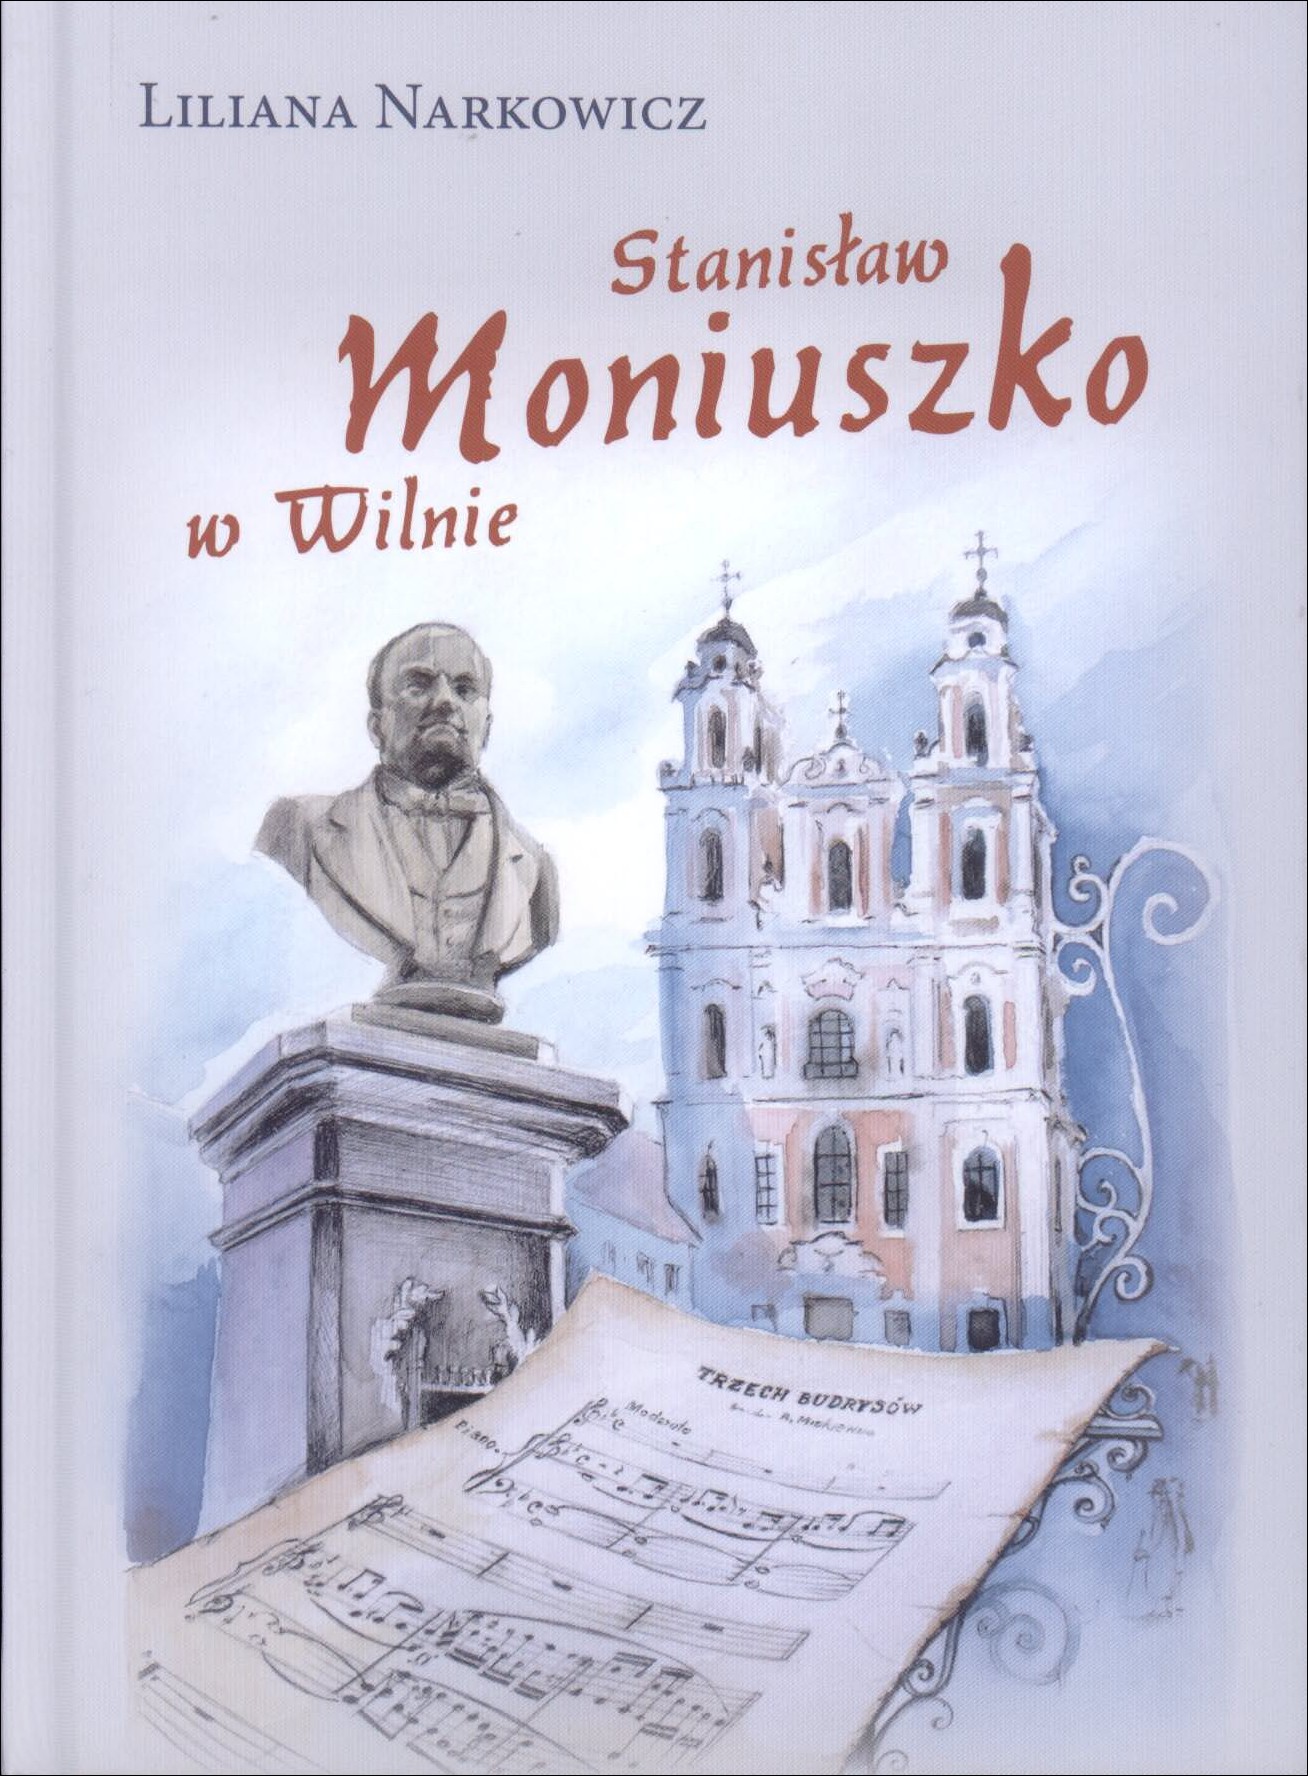 Narkowicz, Liliana. Stanisław Moniuszko w Wilnie. – Wilno, 2014. Knygos viršelis